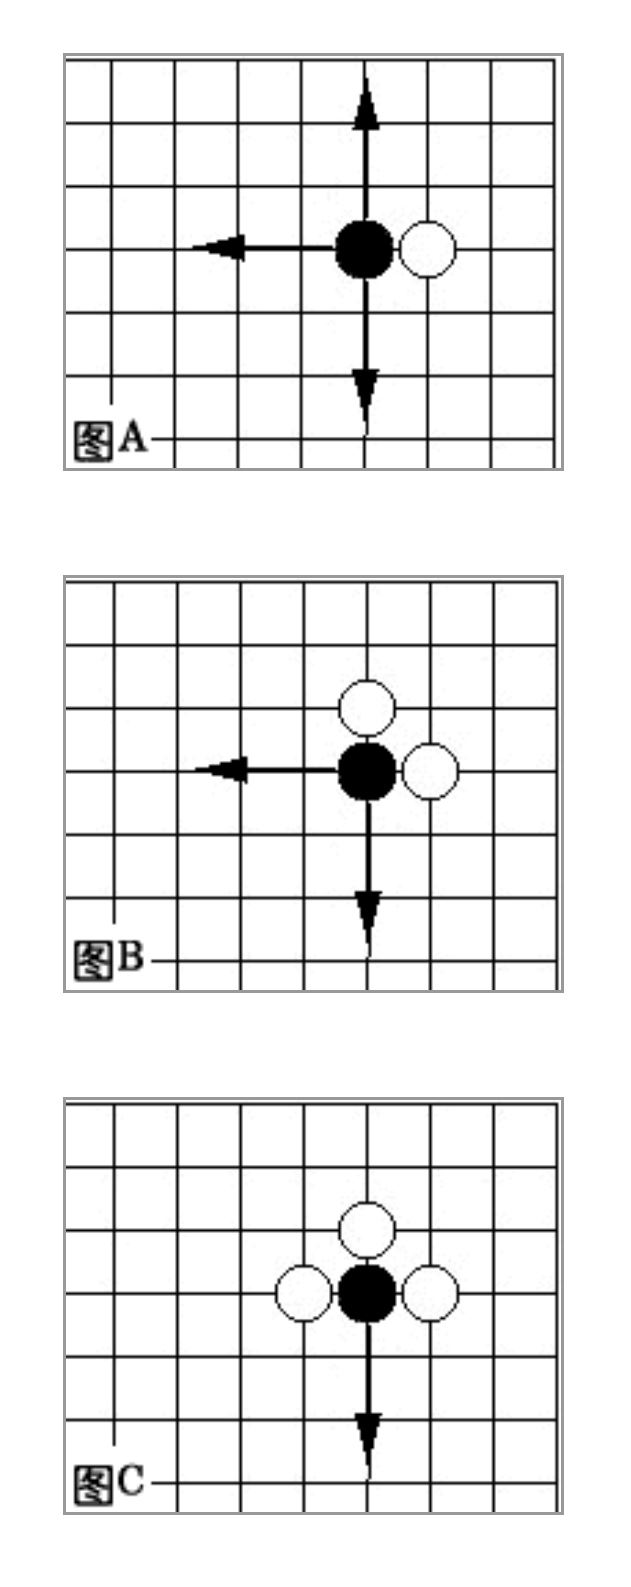 标准围棋有多少个交叉点（围棋规则新手图解）-第11张图片